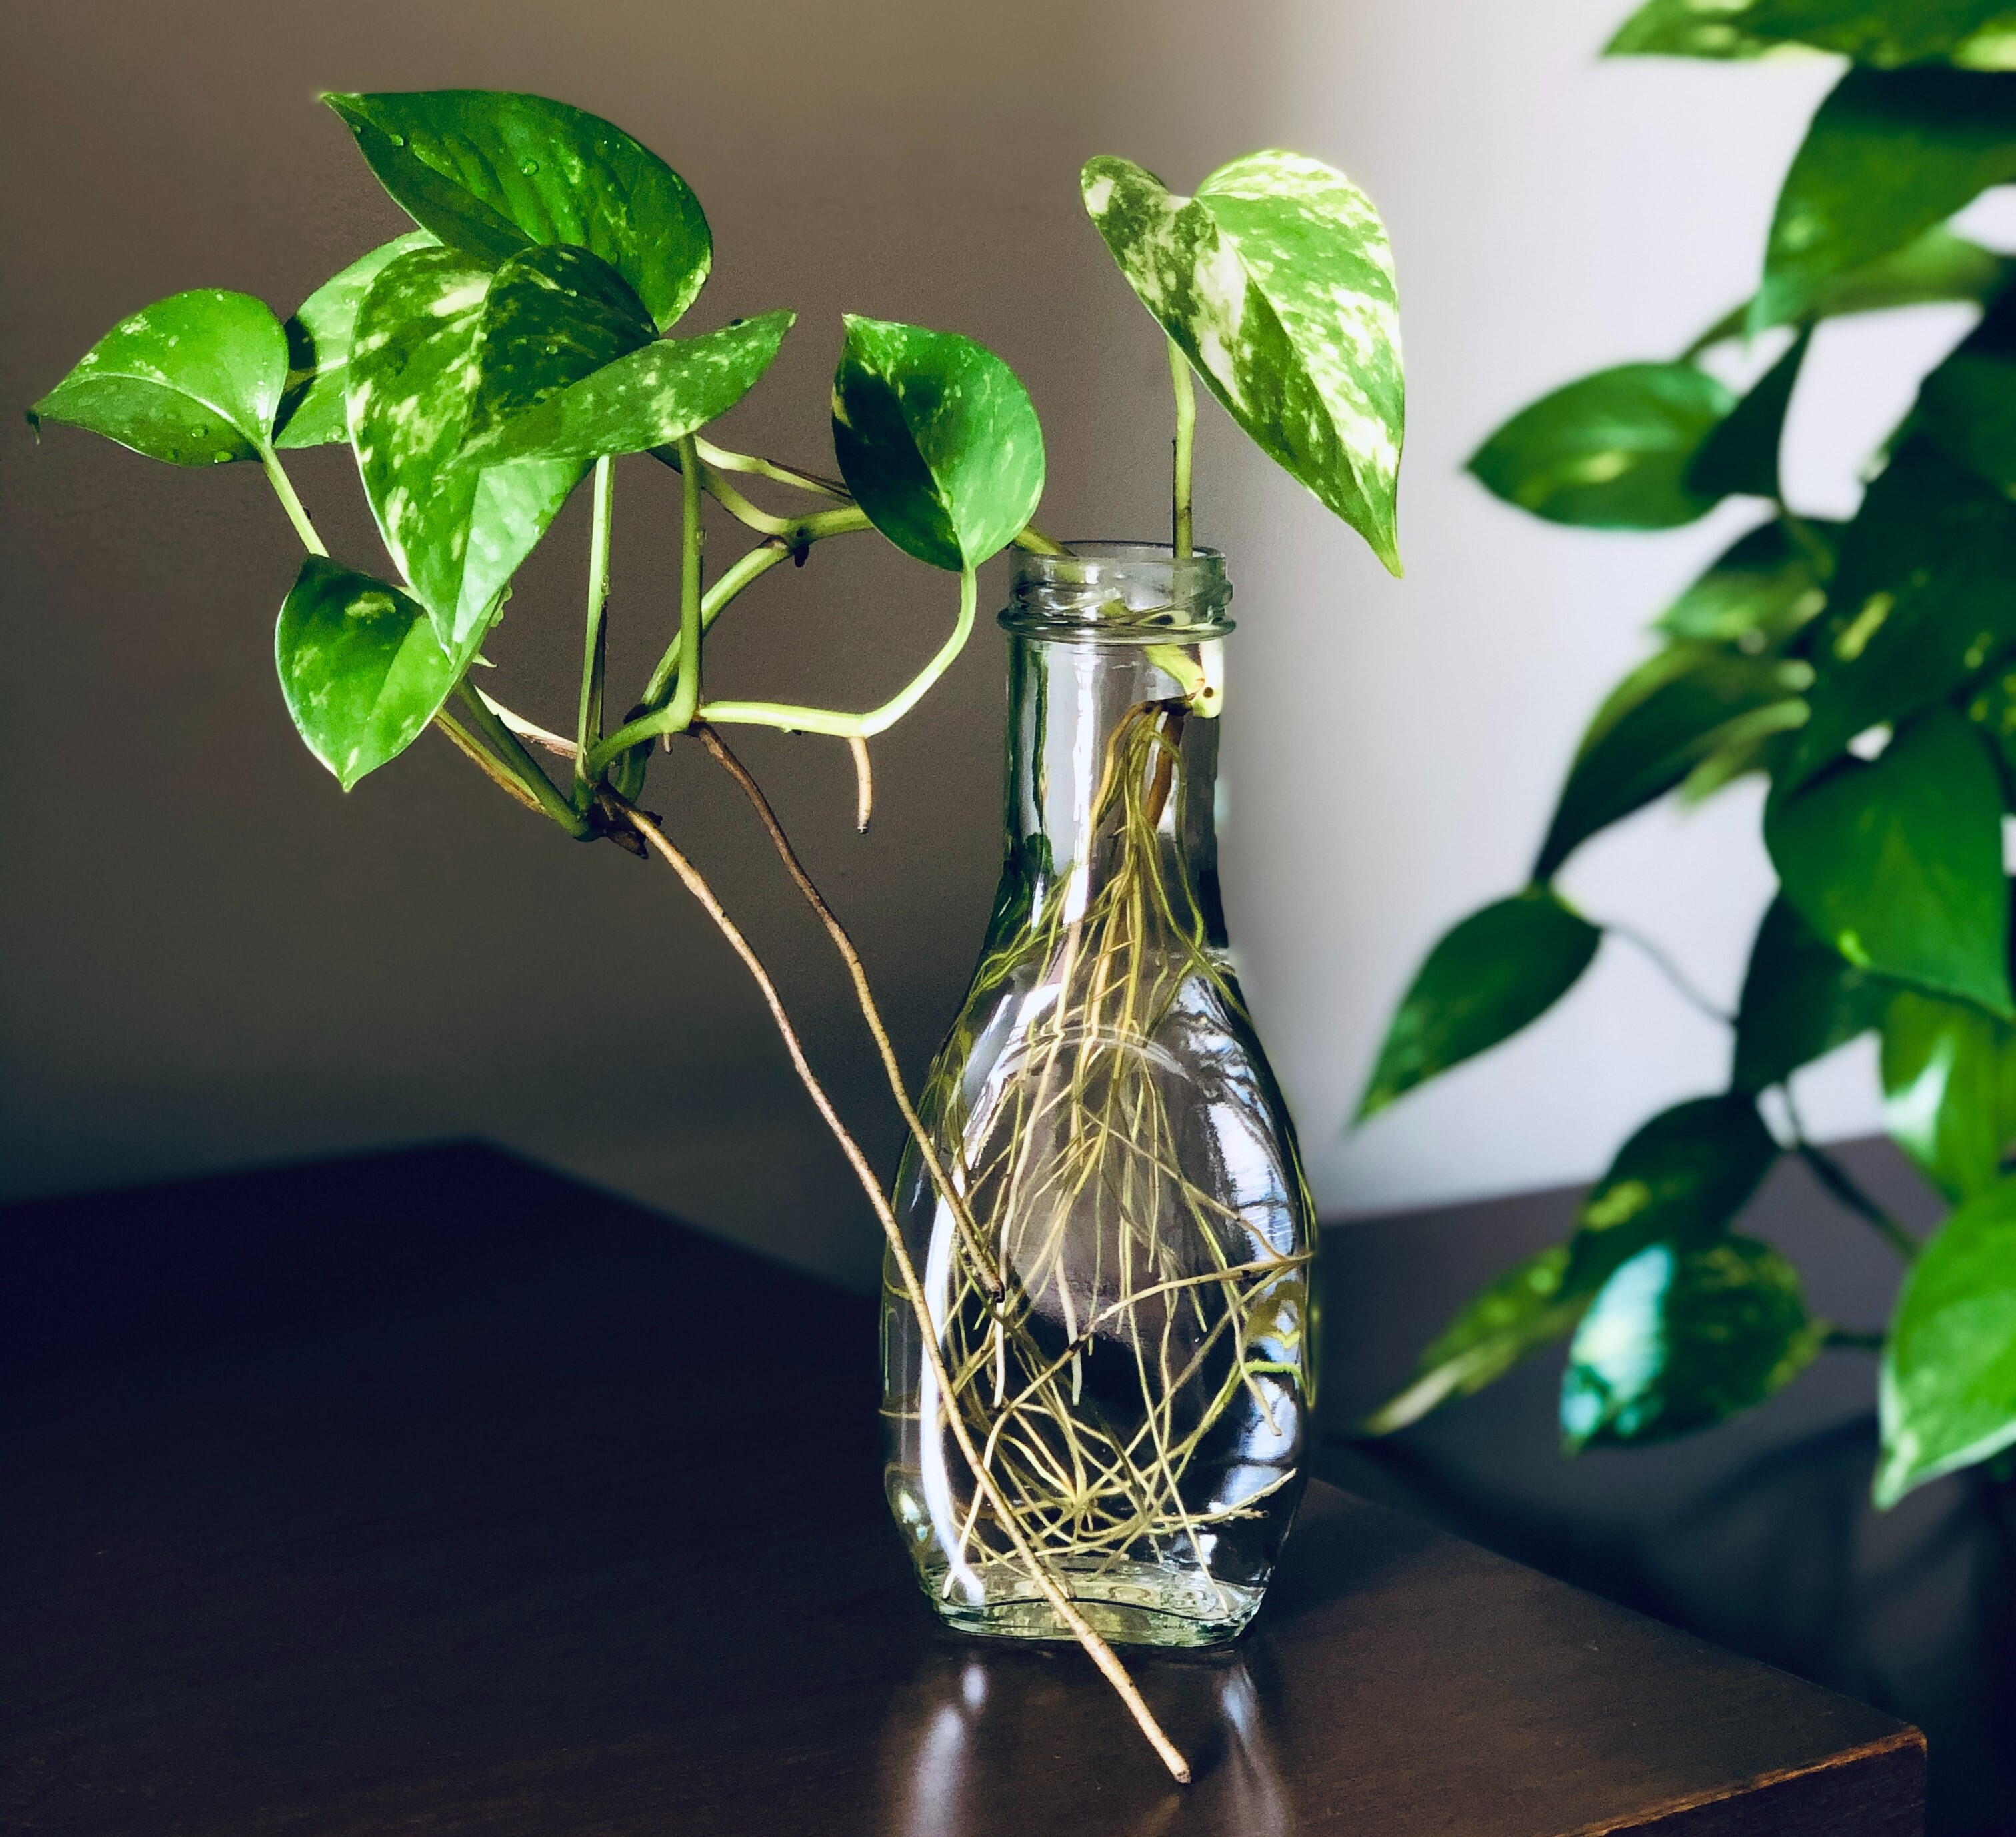 Planta jiboia em um vaso em formato de garrafa